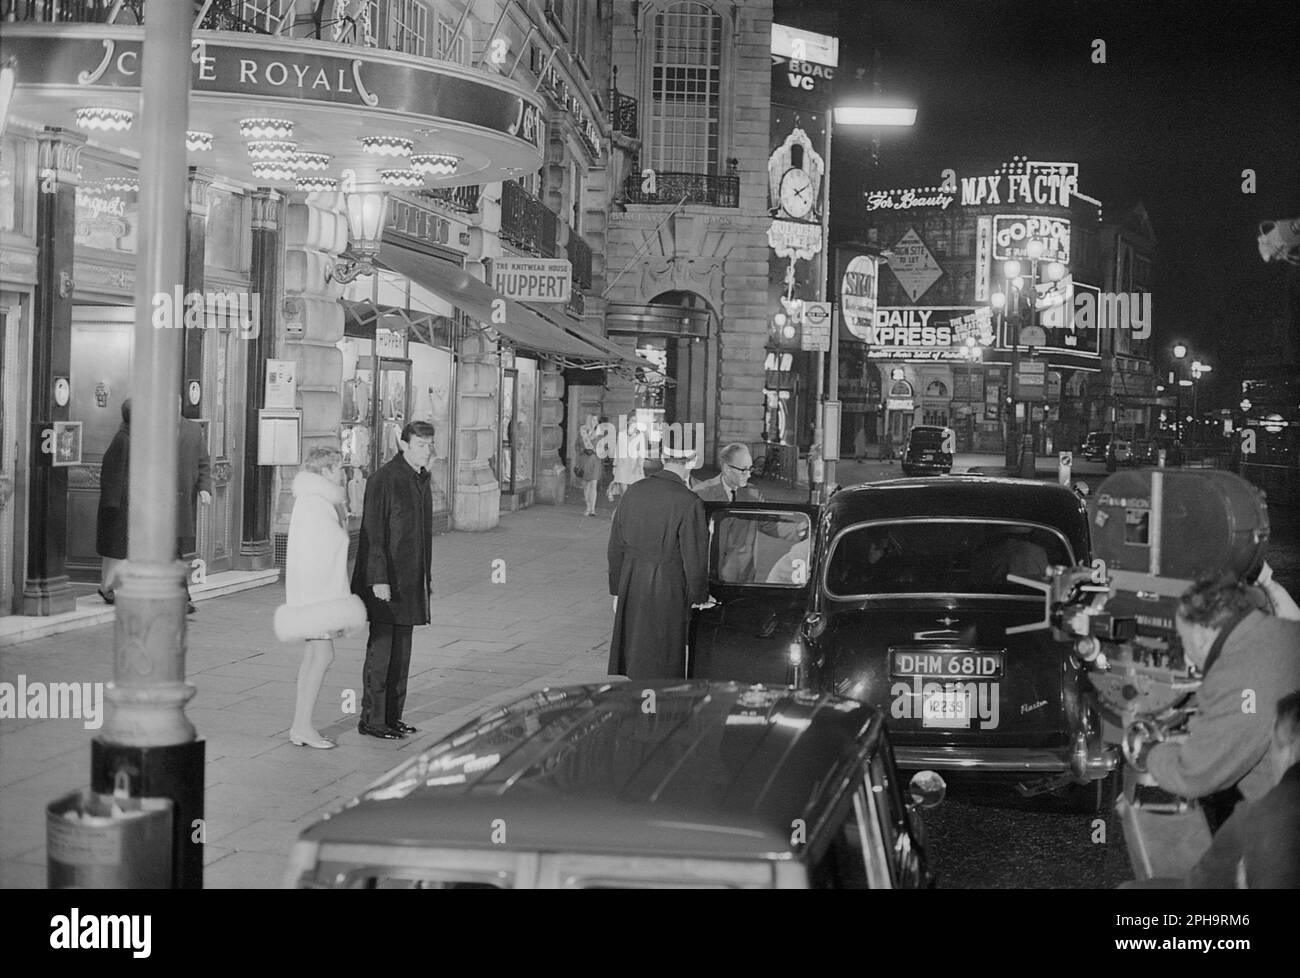 Londra. circa 1967. Una fotografia di mia Farrow e Laurence Harvey al di fuori del Café Royal, Regent Street a Piccadilly, Londra, scattata dietro le quinte durante le riprese del film di spia britannico neo-noir, ‘A Dandy in aspic’. Il film è stato diretto da Anthony Mann. Foto Stock